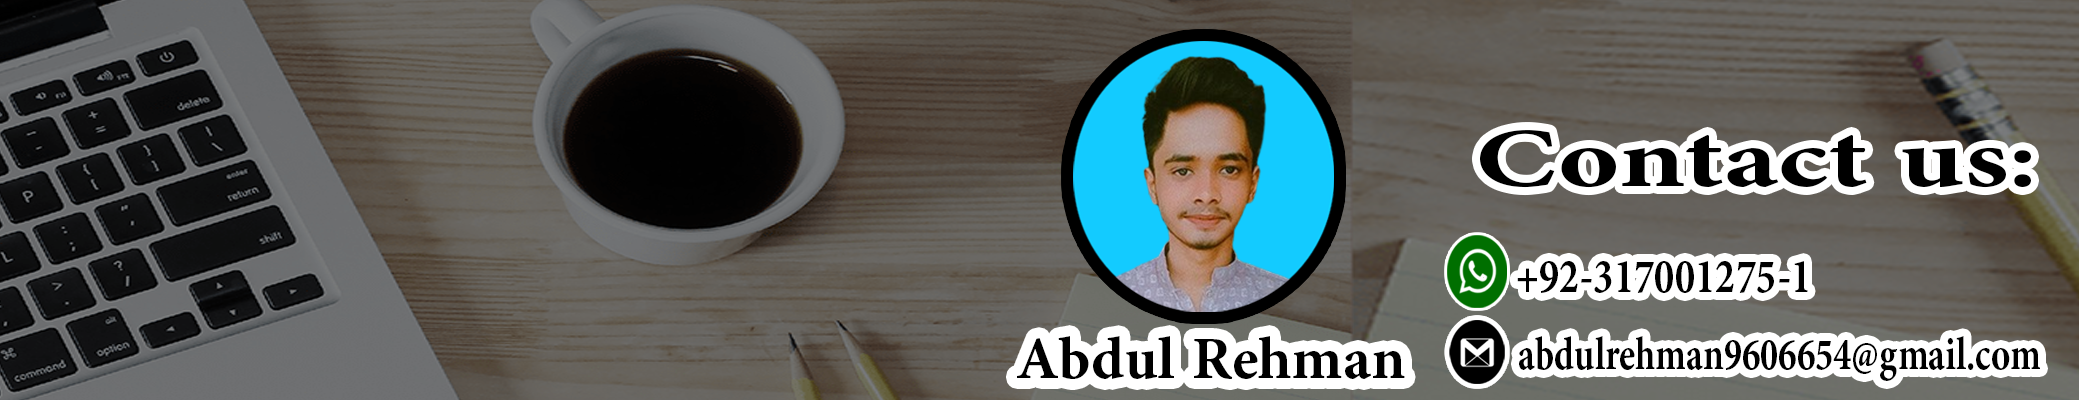 Abdul Rehmans profilbanner